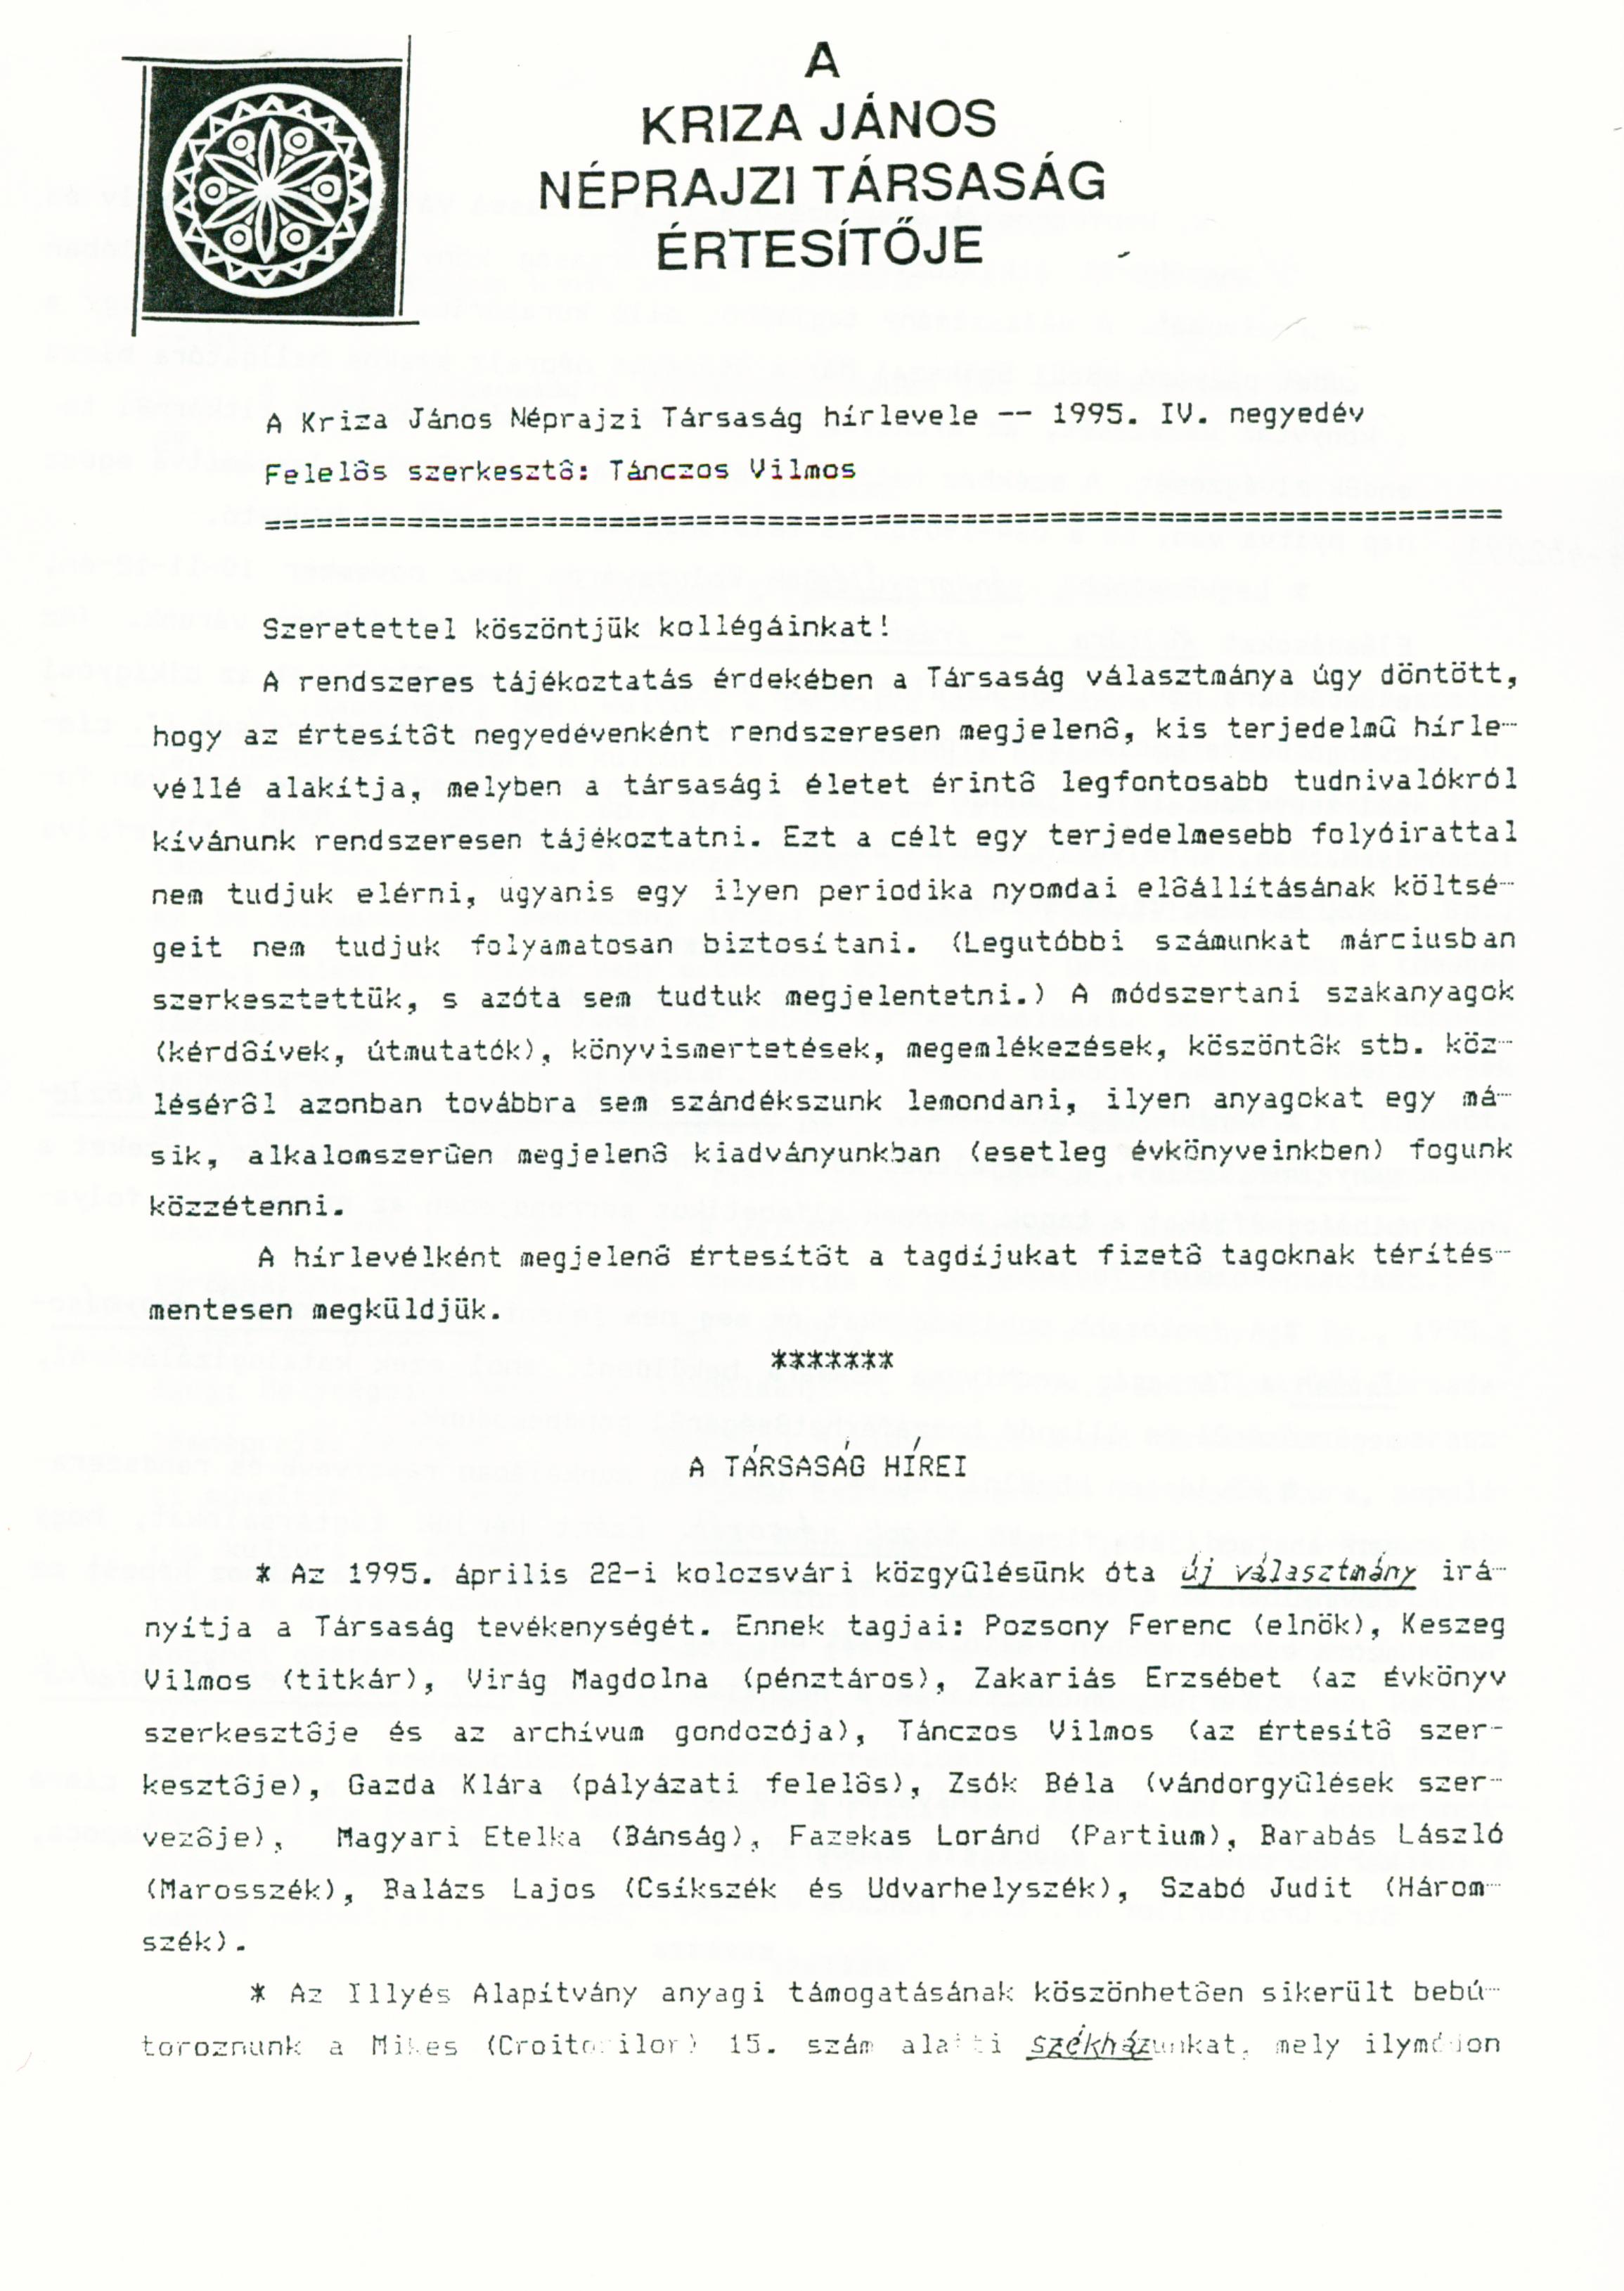 [Bulletin of the Kriza János Etnographic Society. Vol. V. Nr. 4.] A Kriza János Néprajzi Társaság Értesítője. V. évf. 4. sz.